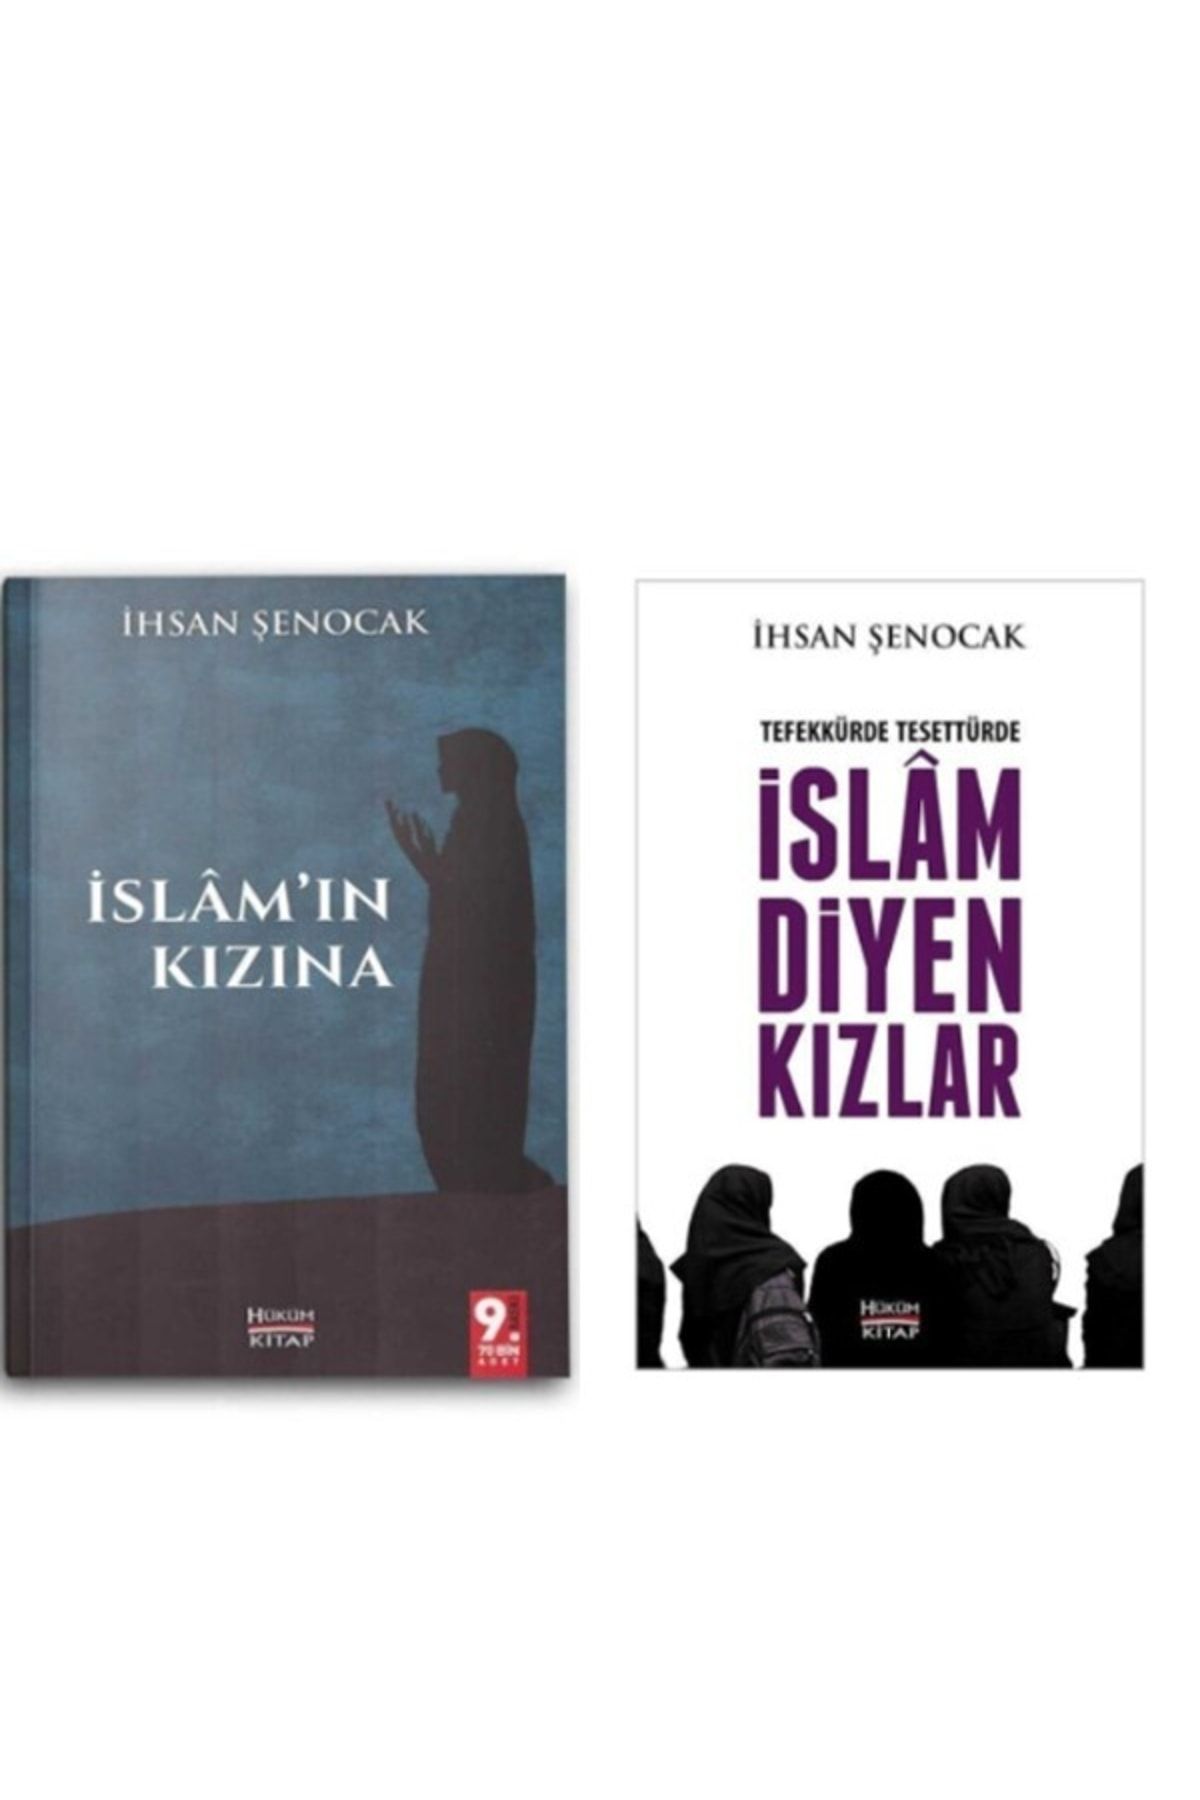 Hüküm Kitap Yayınları Tefekkürde Tesettürde Islam Diyen Kızlar & Islamın Kızına 2 Kitap